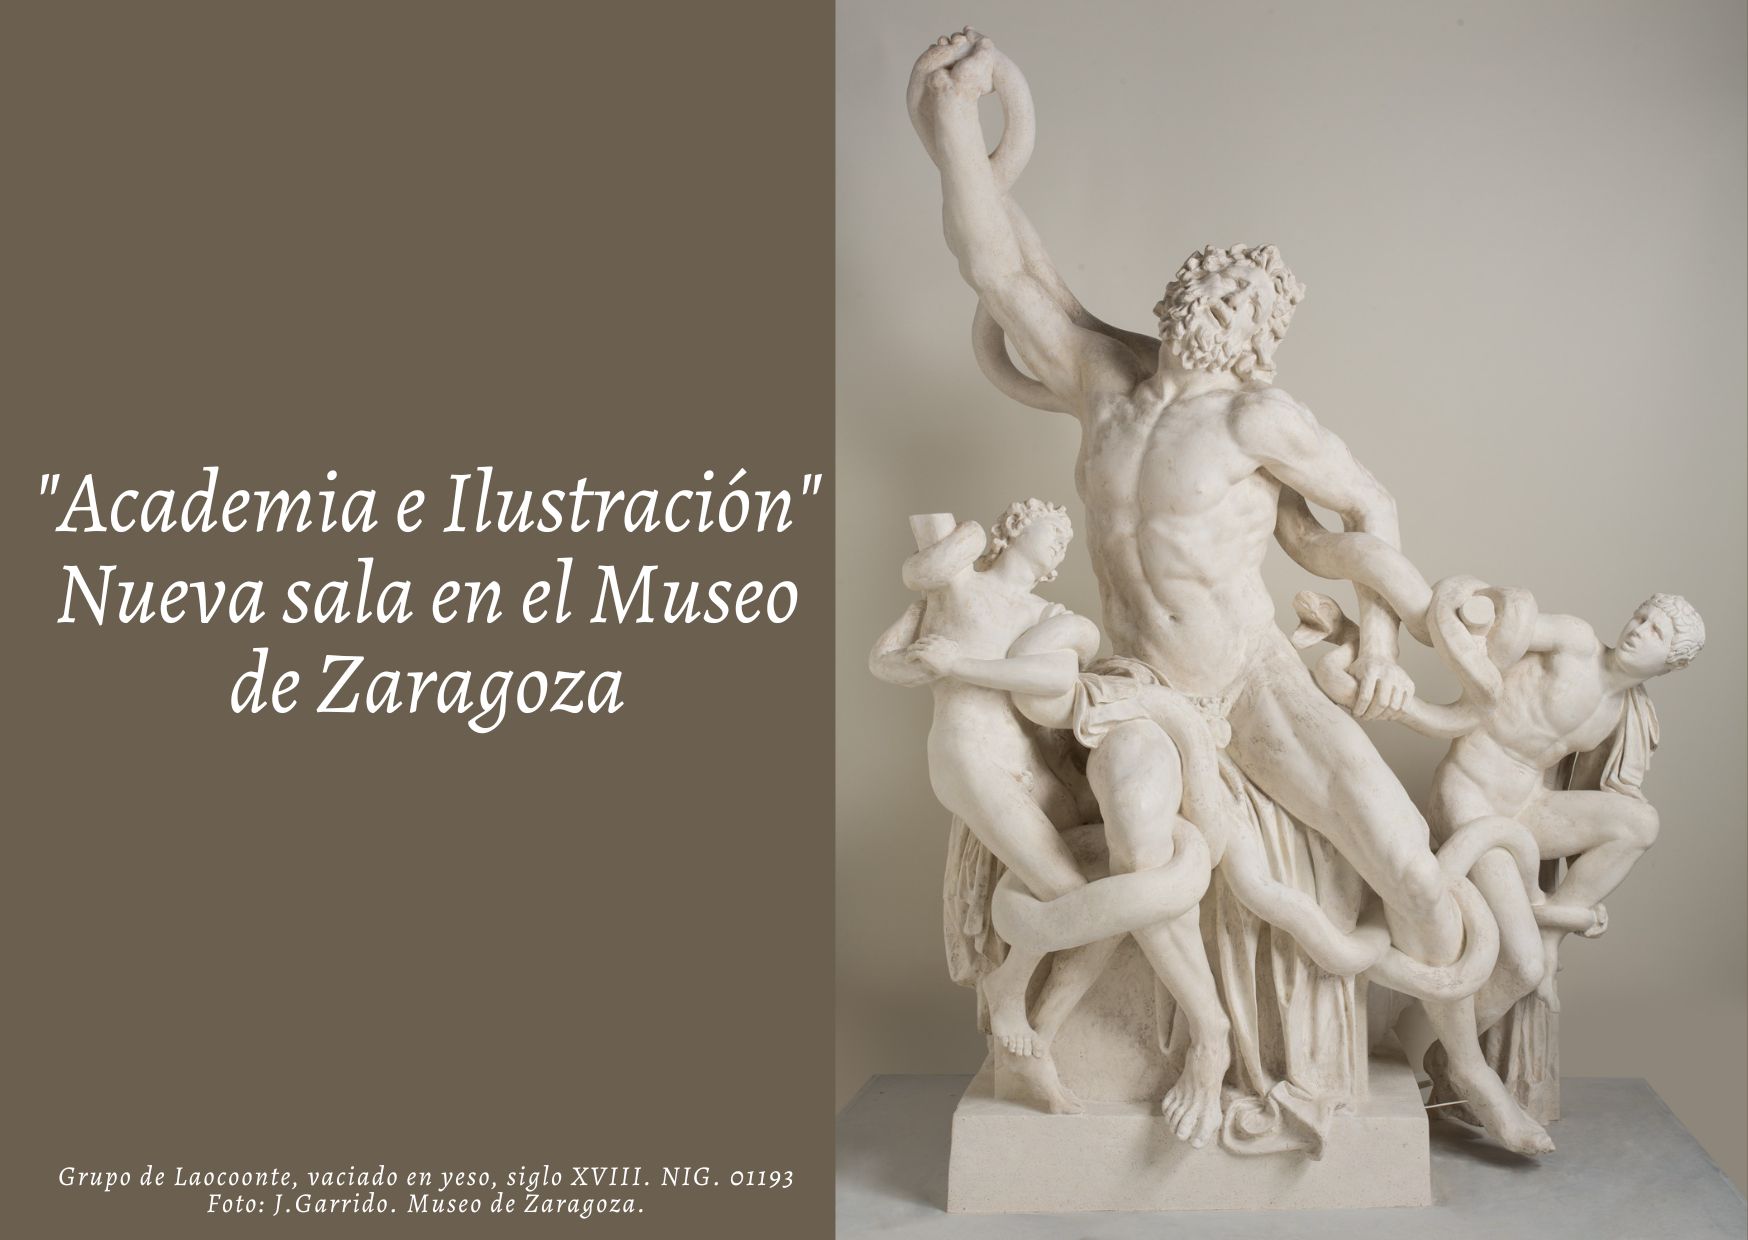 Academia e ilustración. Nueva sala en el Museo de Zaragoza